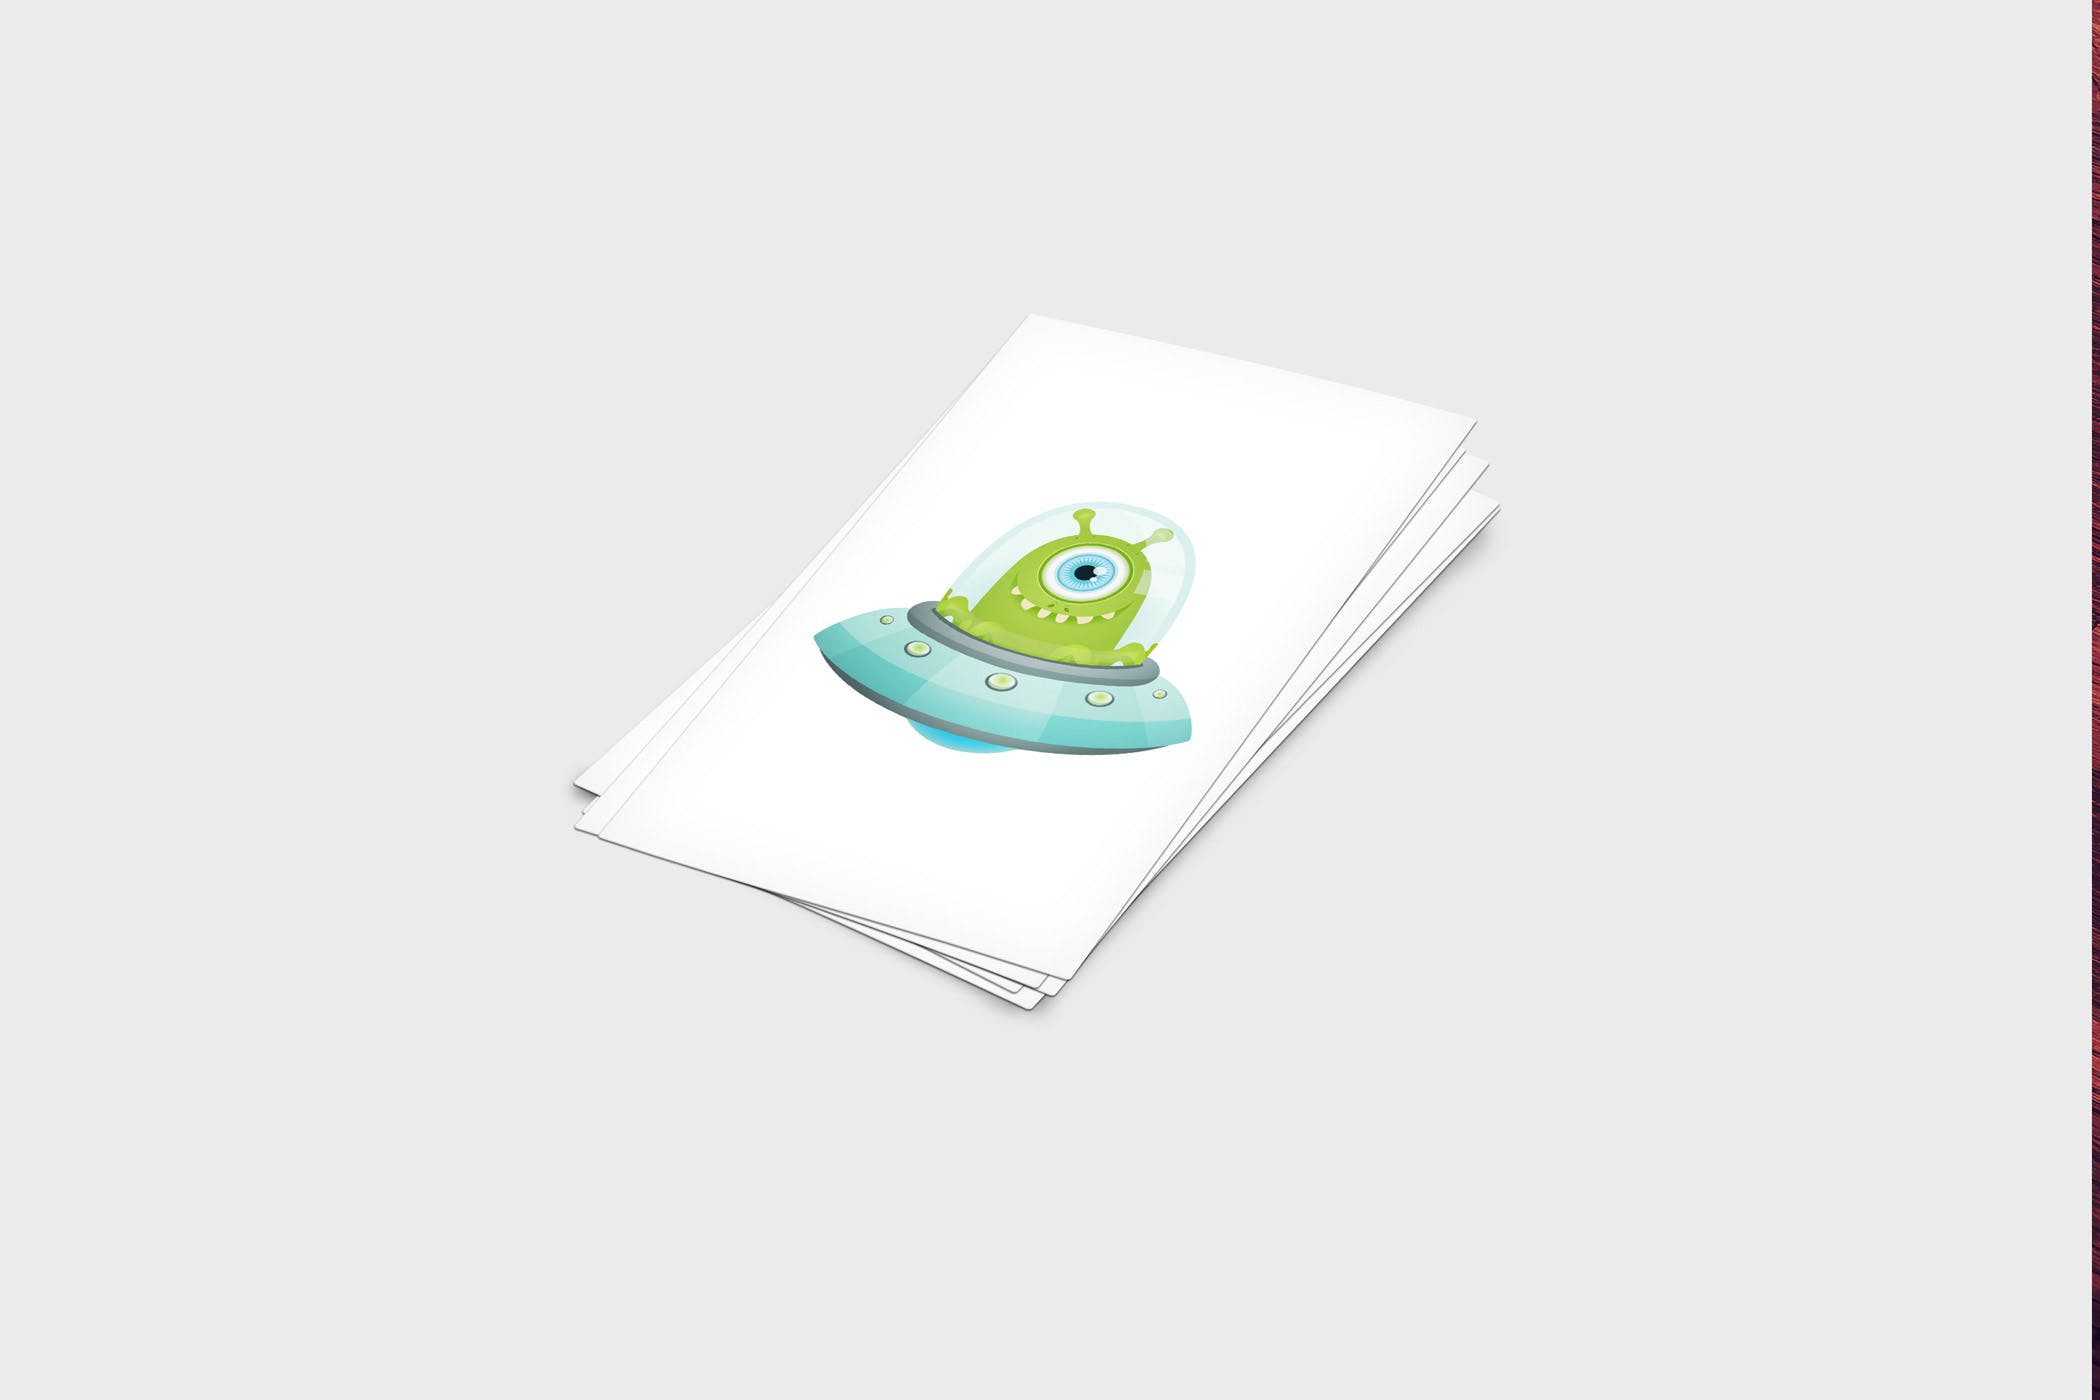 企业名片设计效果图展示样机非凡图库精选模板 4 Business Card Mock-Up Template插图(2)